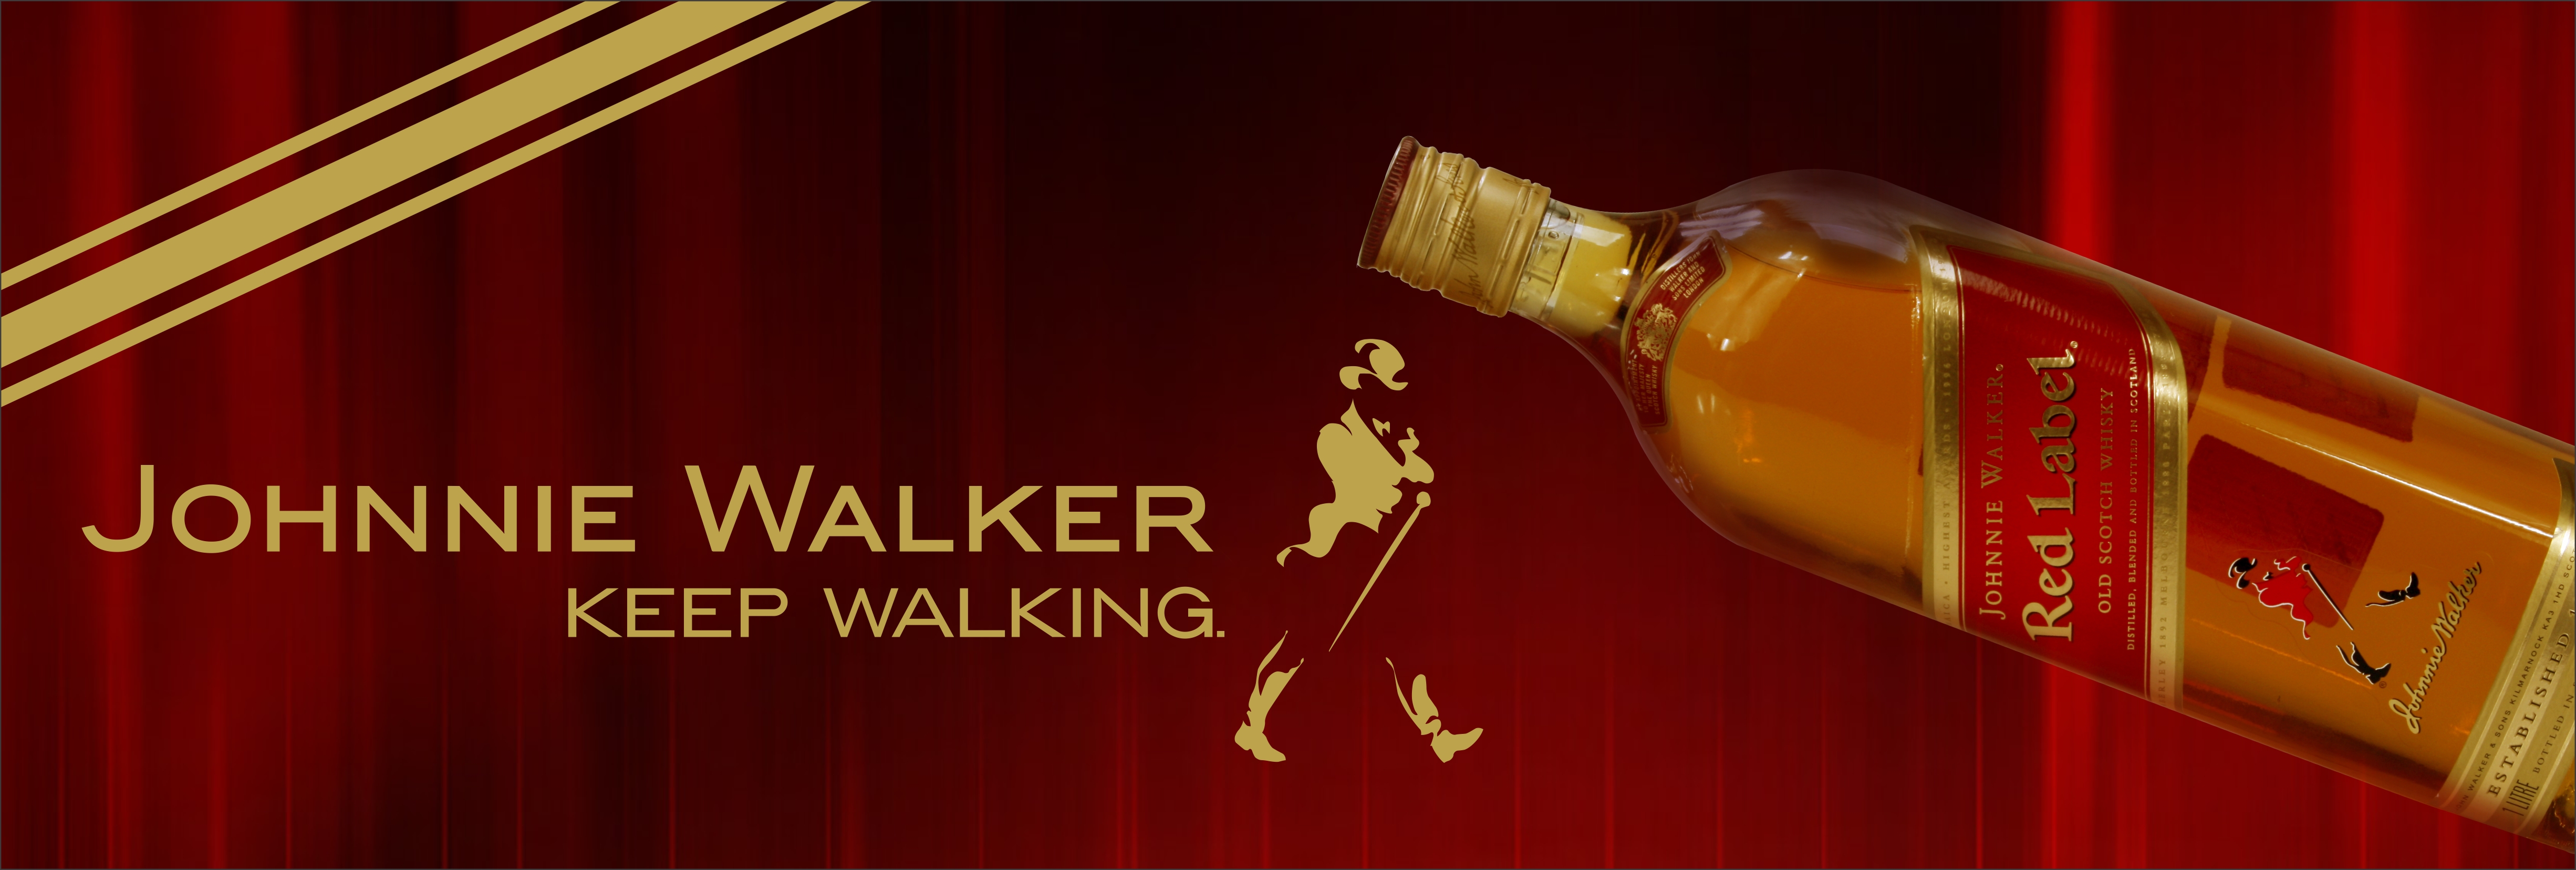 Johnnie Walker Keep Walking Logo HD Wallpaper Picture